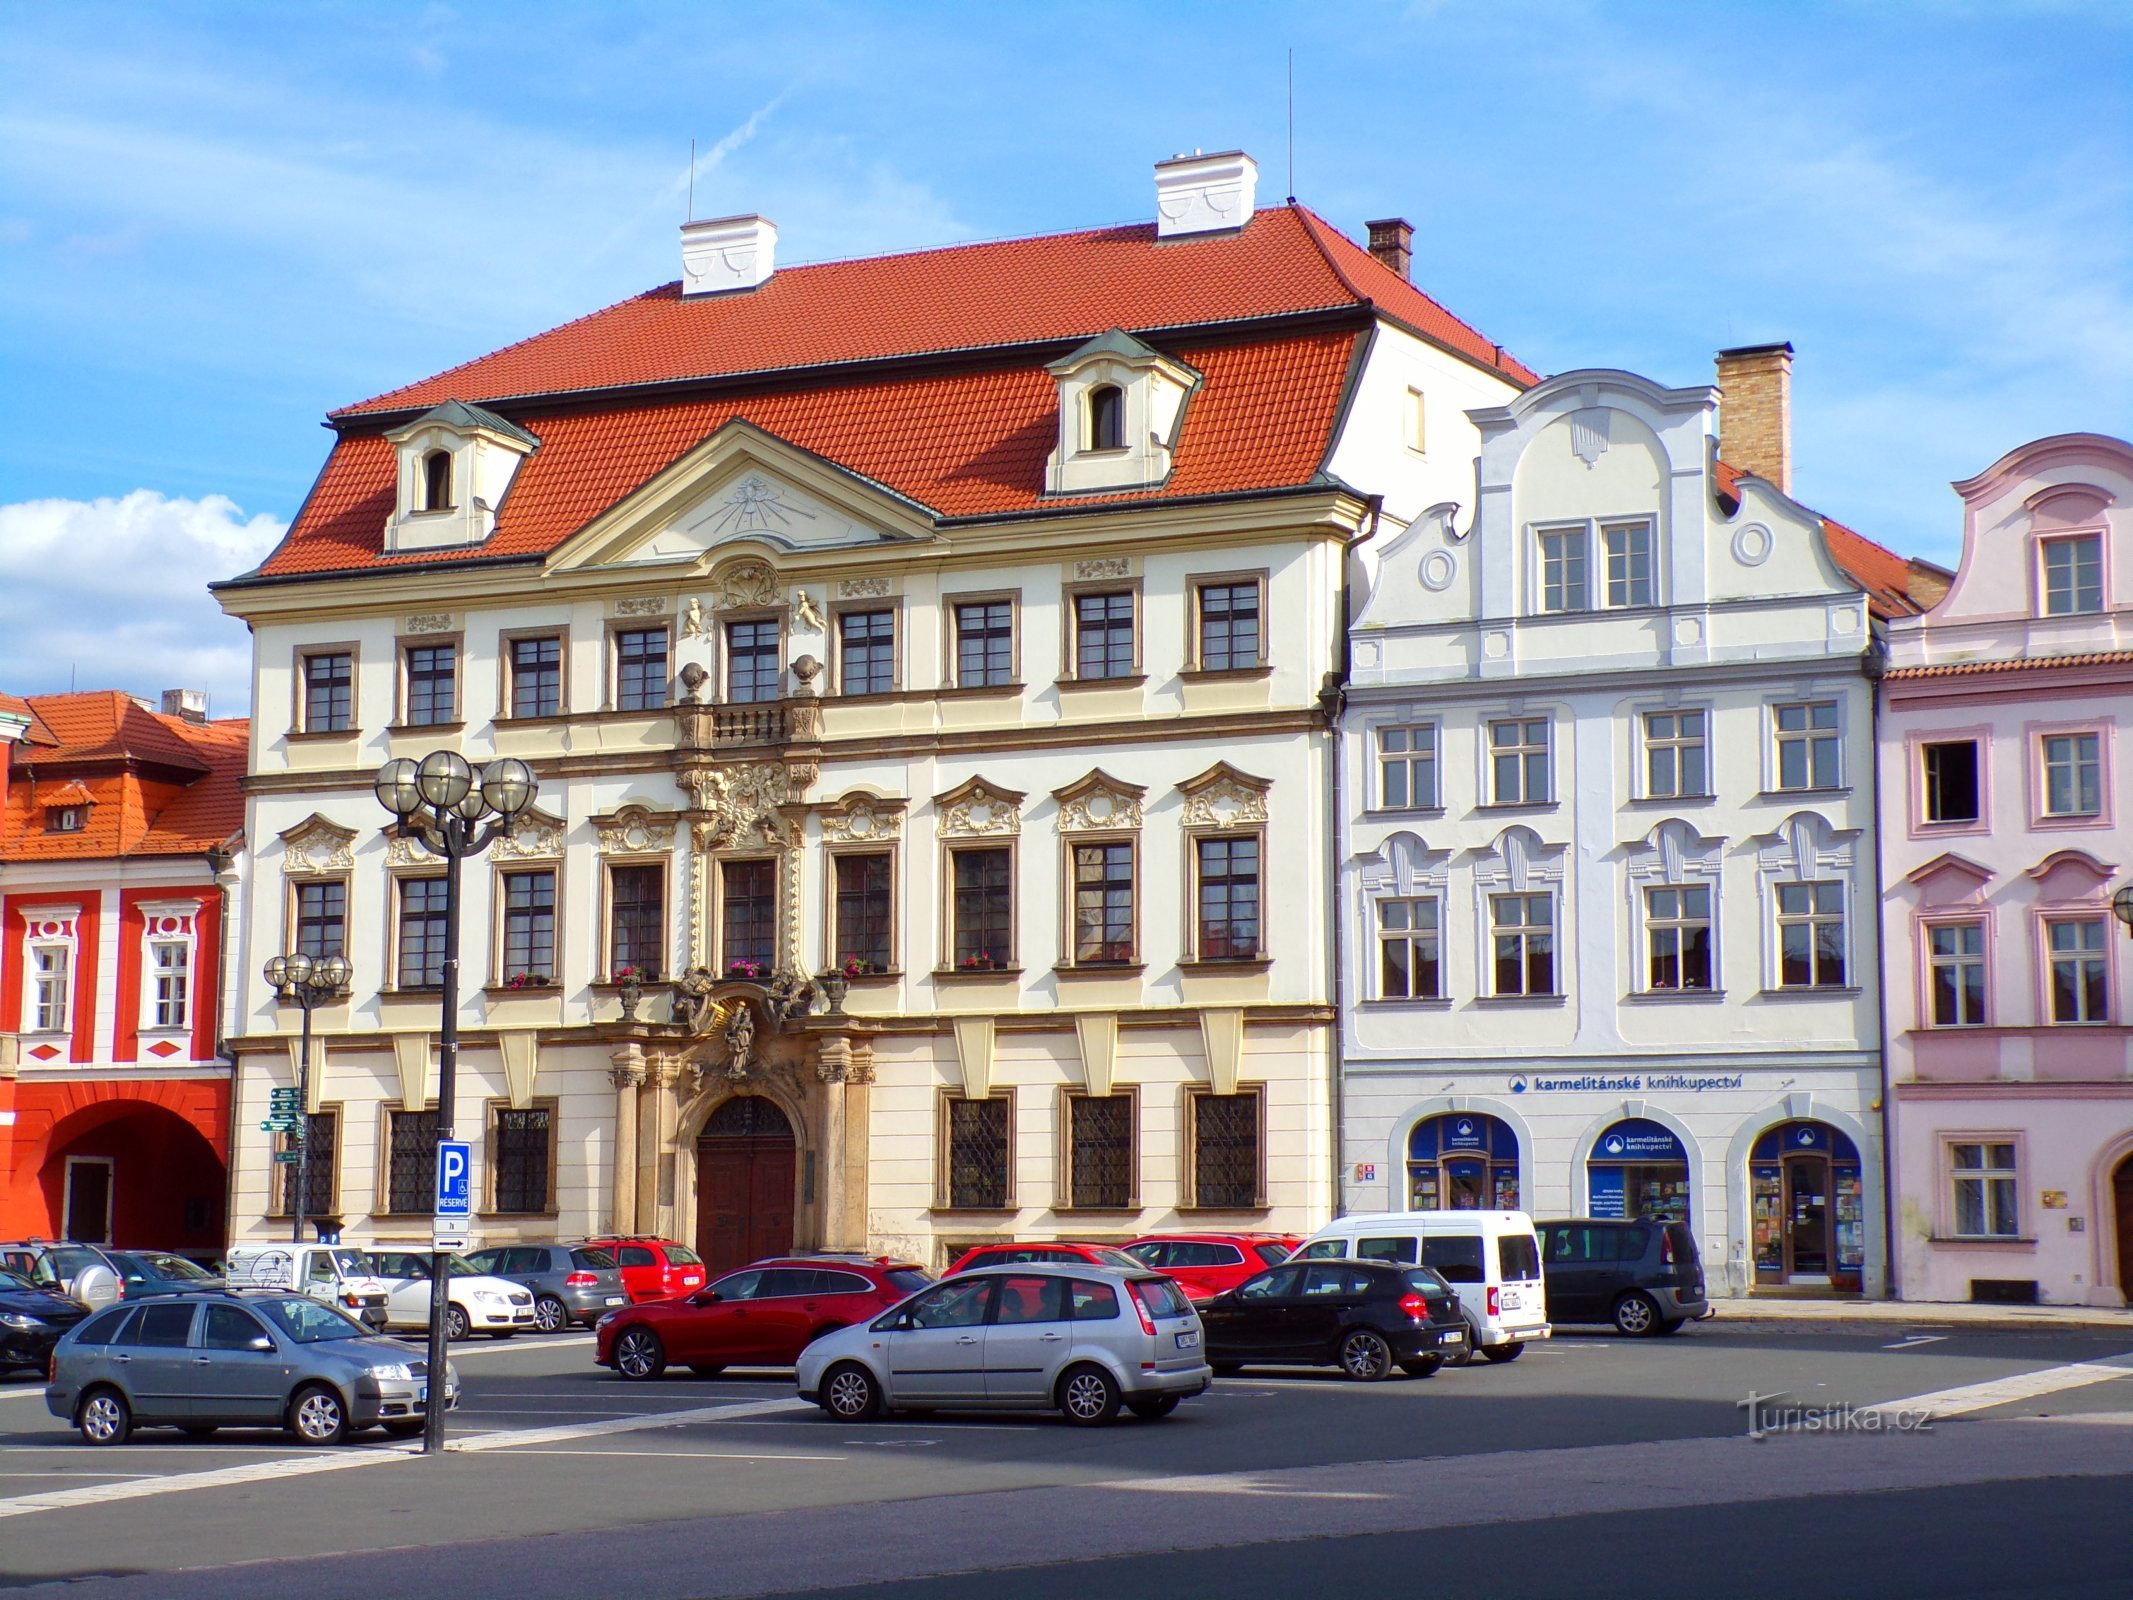 Velké náměstí br. 35-36 (Hradec Králové, 17.6.2022/XNUMX/XNUMX)